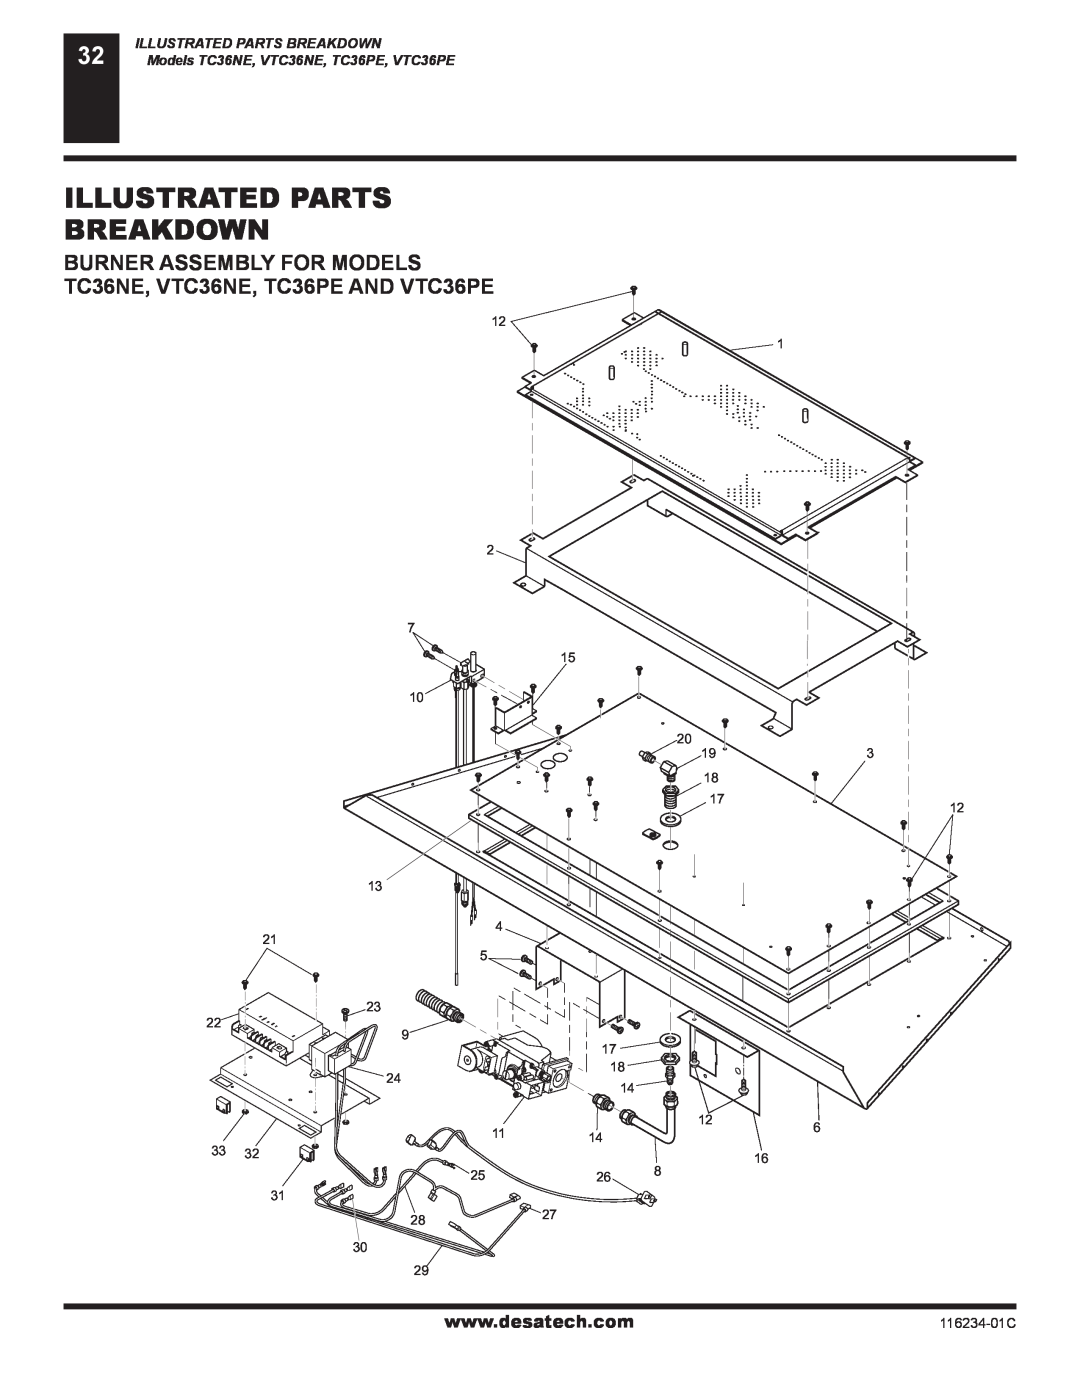 Desa (V)TC36PE SERIES Illustrated Parts Breakdown, Burner Assembly For Models, TC36NE, VTC36NE, TC36PE AND VTC36PE 